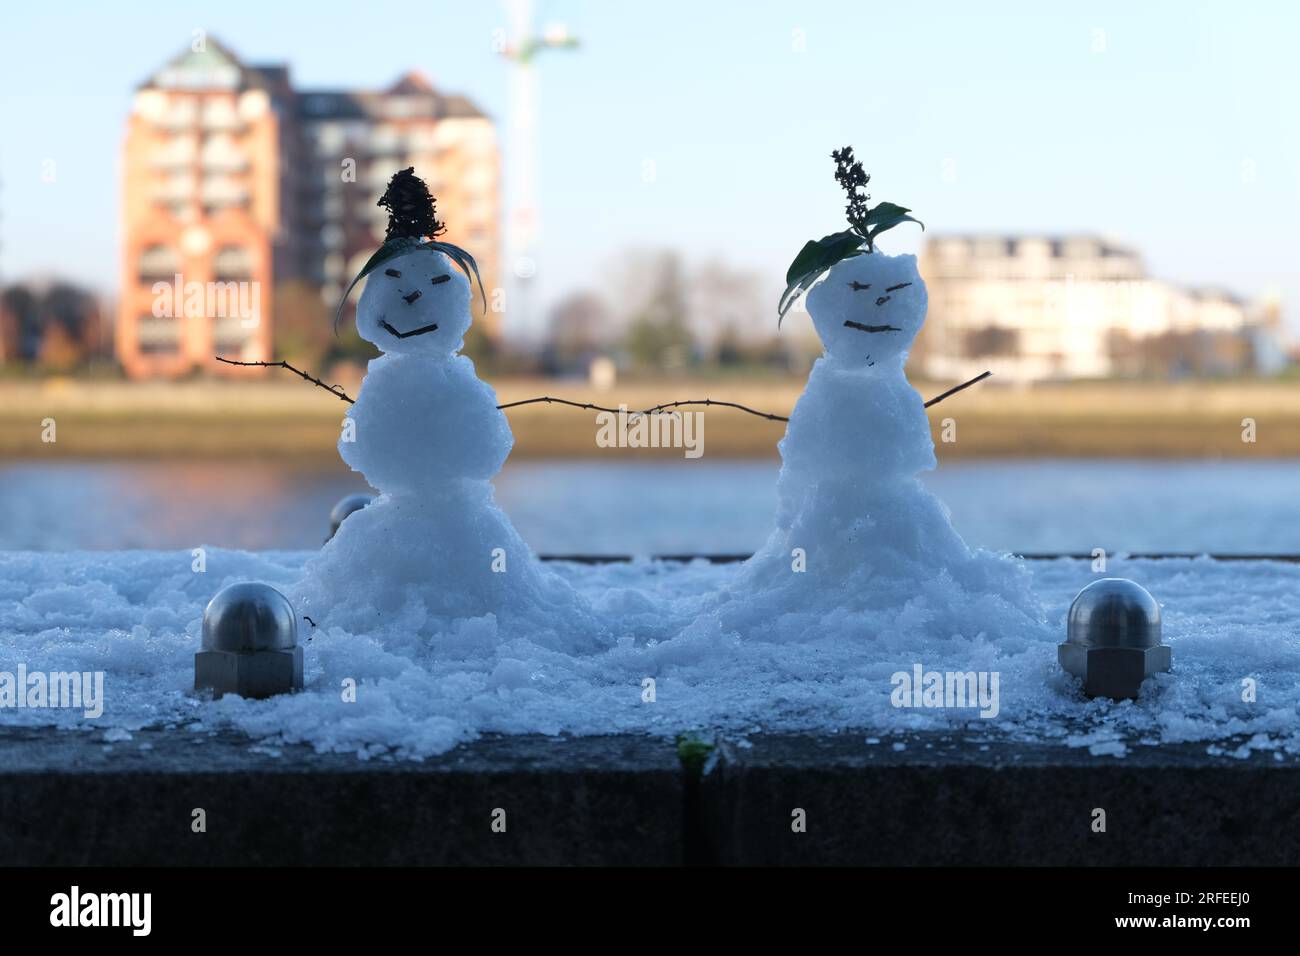 Zwei Schneemänner in einer Winter- und Schneeszene. Die Themse im Hintergrund. Ein schönes romantisches Bild mit einem weichen Look und traumhafter Qualität. Stockfoto